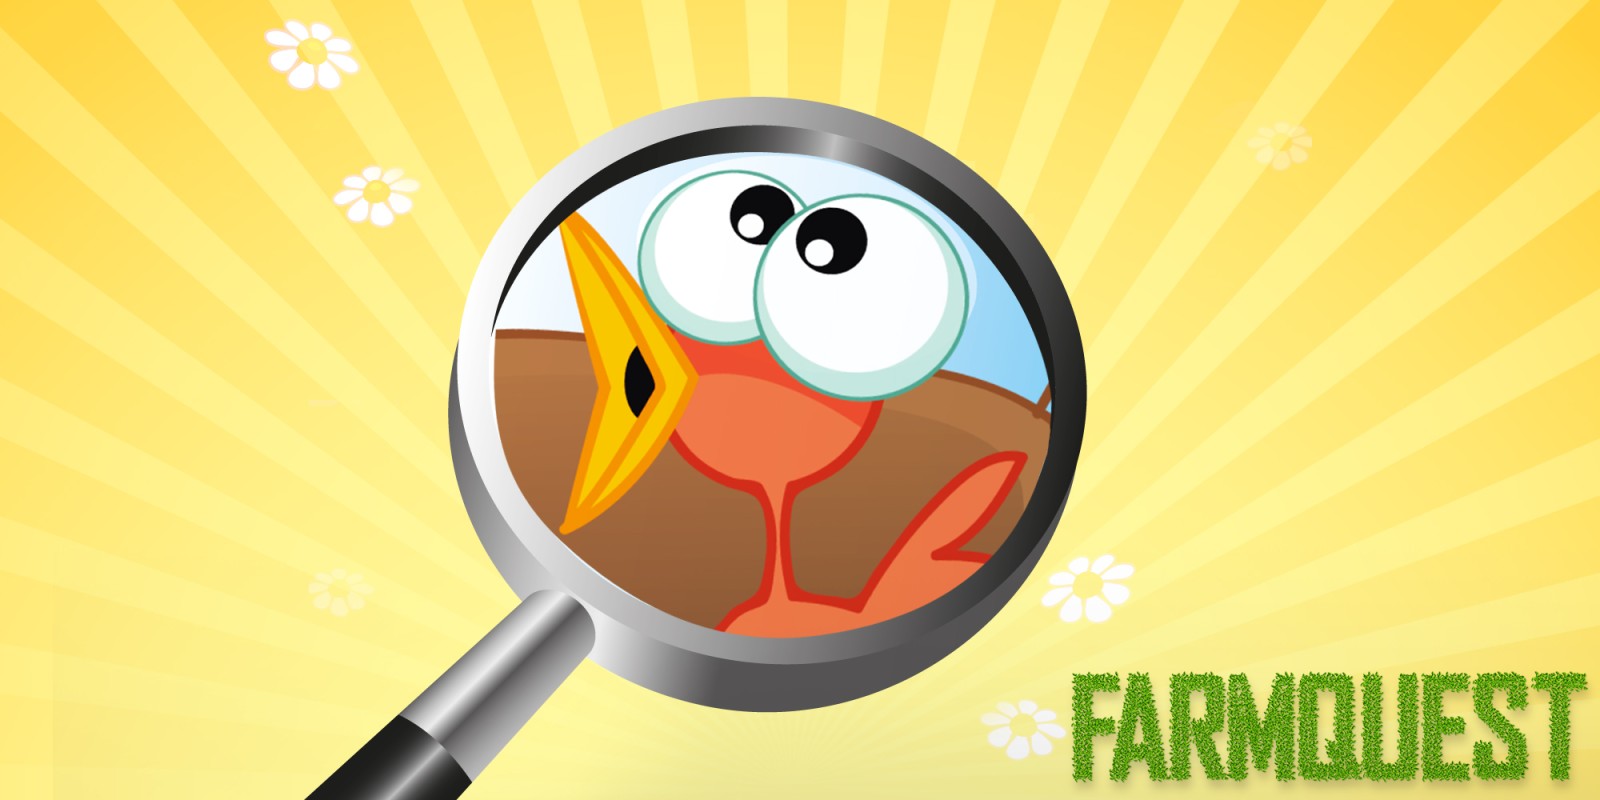 Farmquest - o jogo de objetos escondidos para crianças